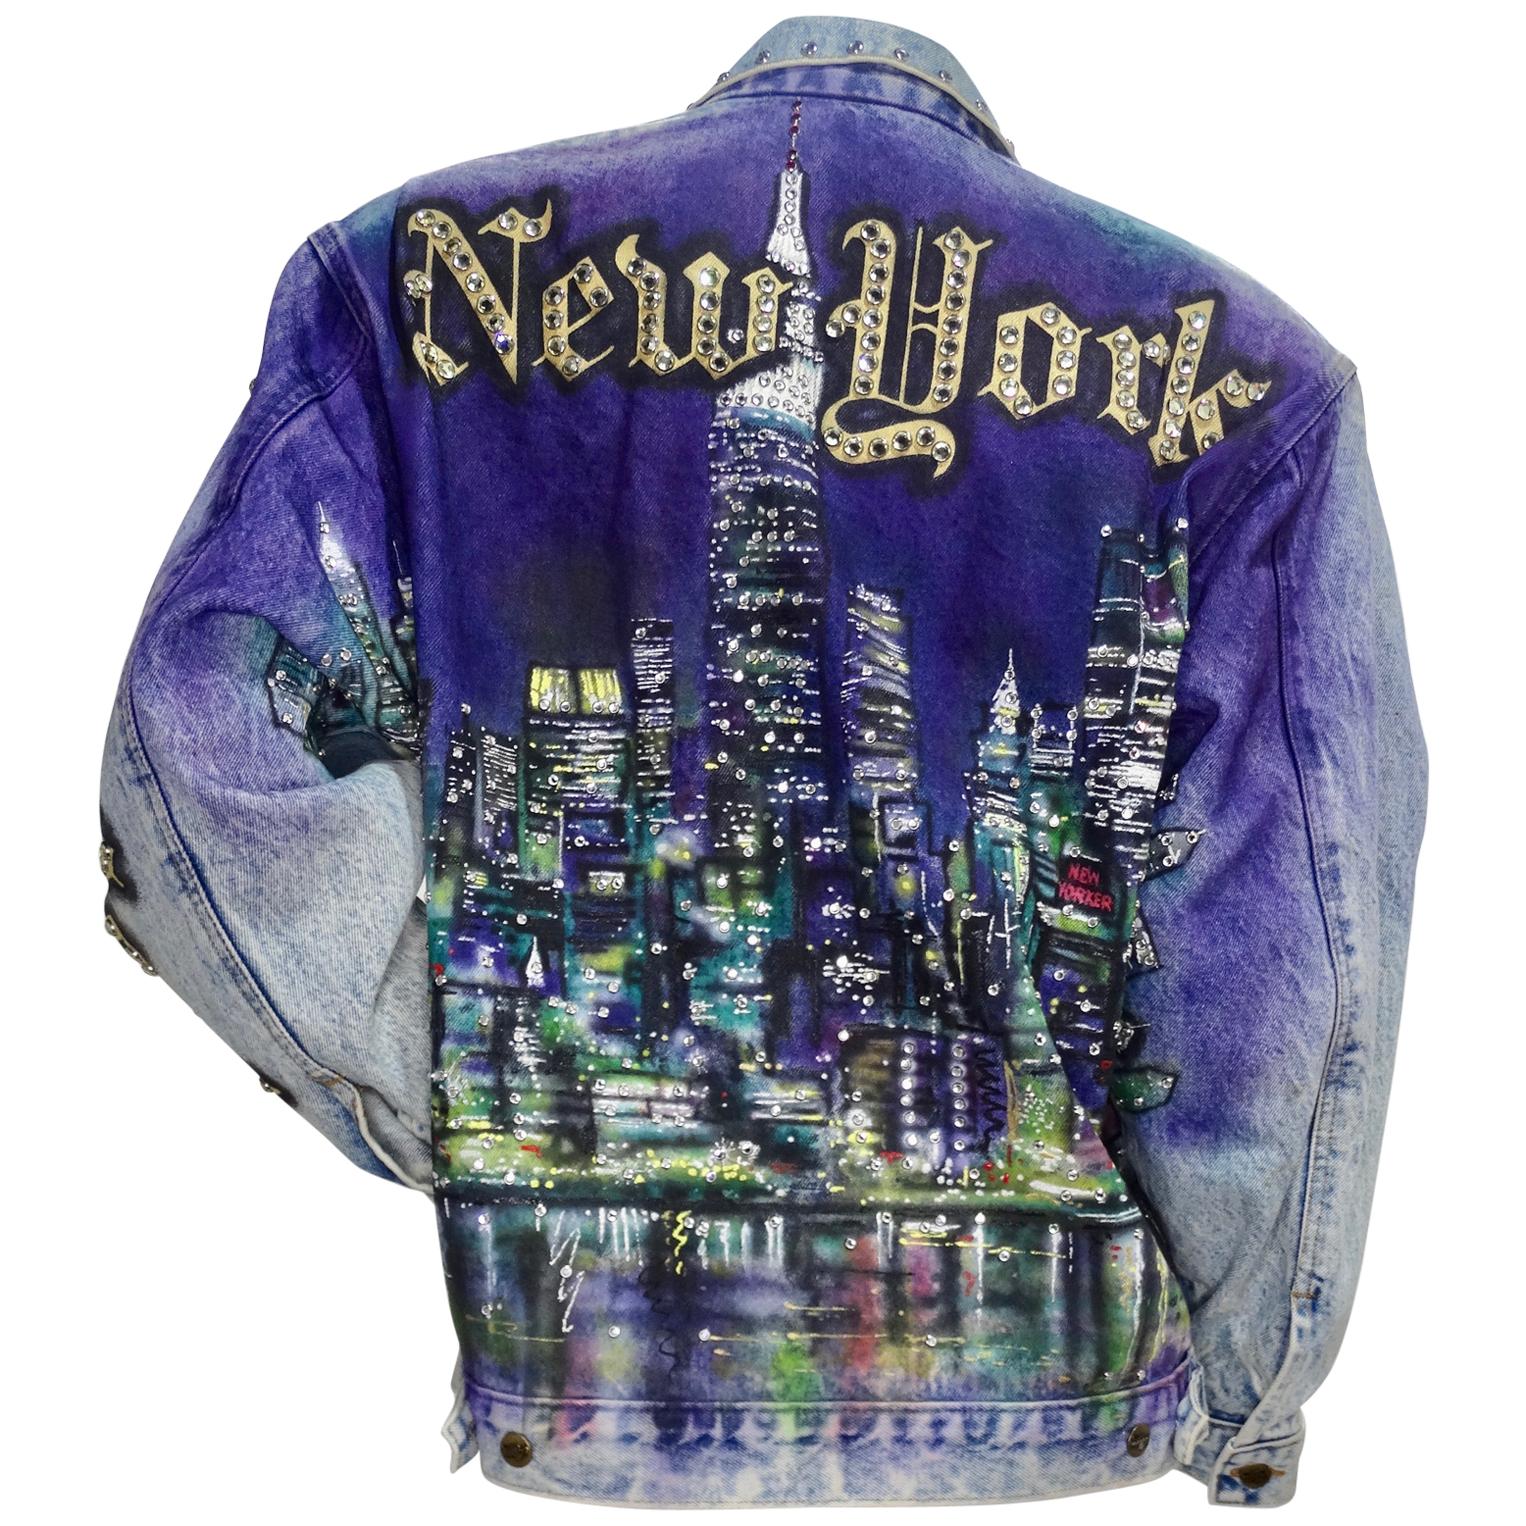 Tony Alamo "New York" Rhinestone Embellished Jean Jacket